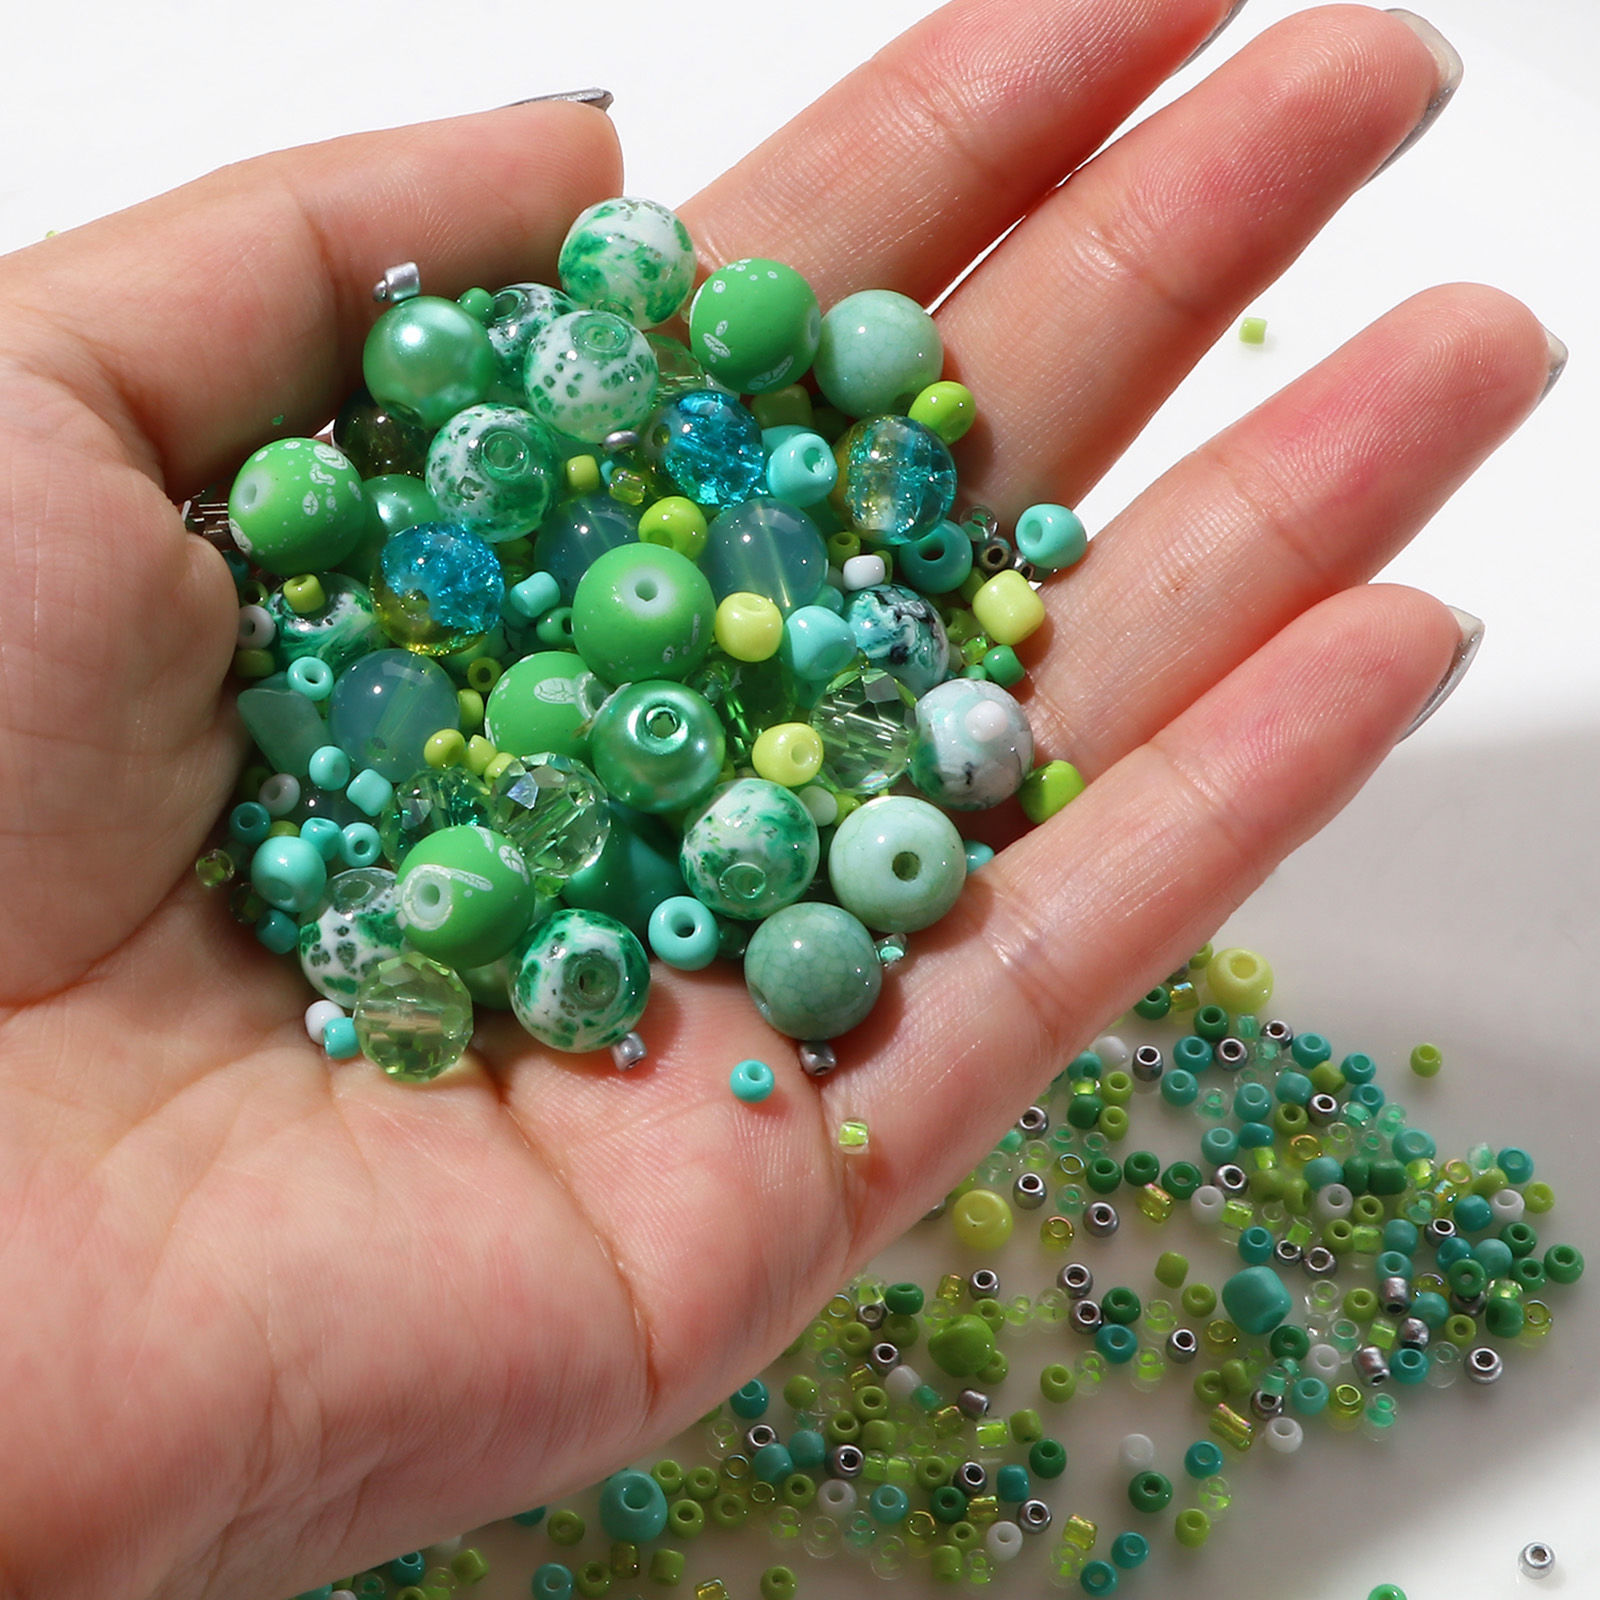 Bild von Glas Runde Perlen Chip Perlen Rocailles DIY Kit Set Mehrfarbig gemischt ca. 8 mm Durchmesser. - 2 x 2 mm